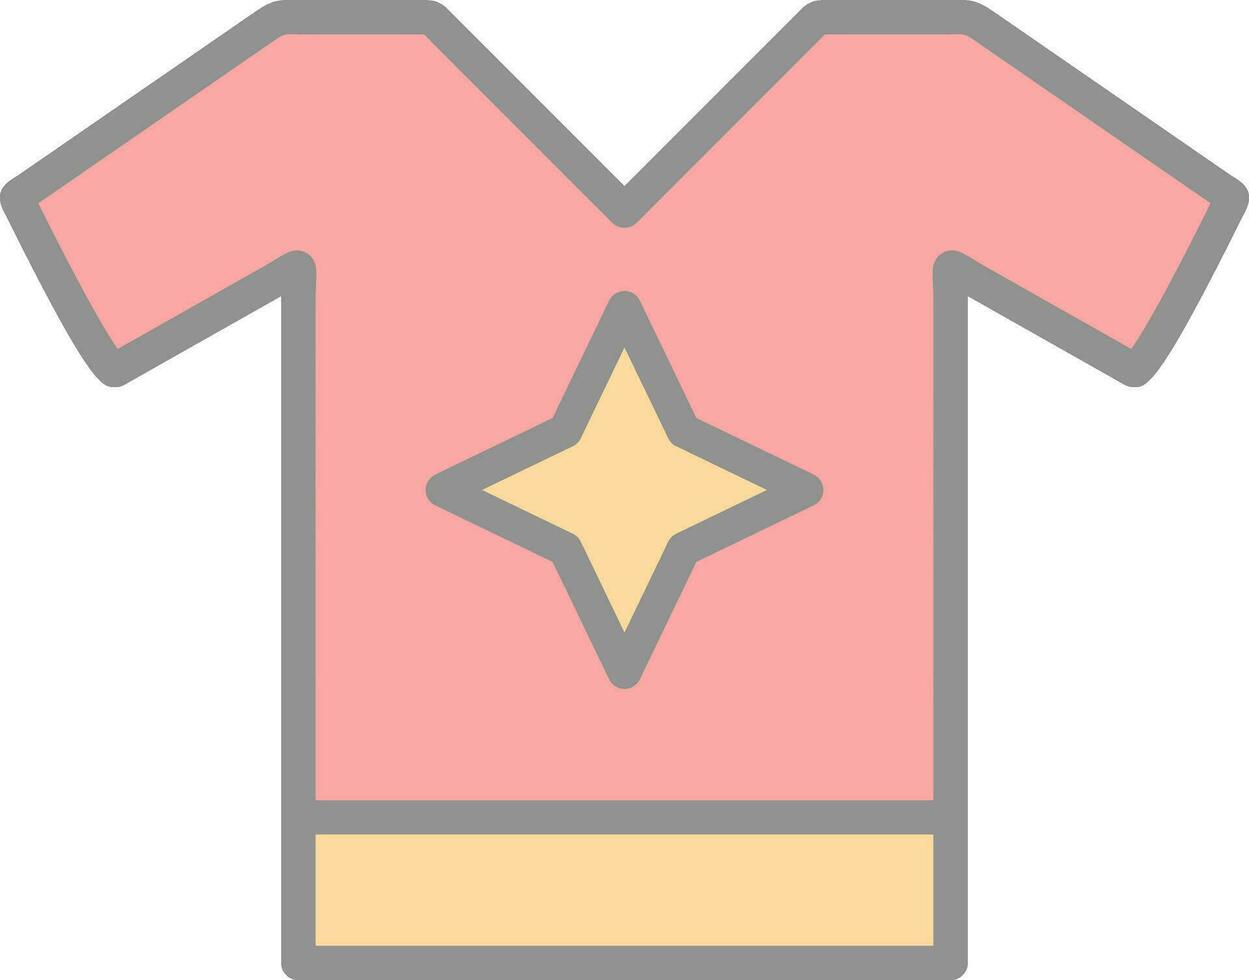 conception d'icône de vecteur de chemise